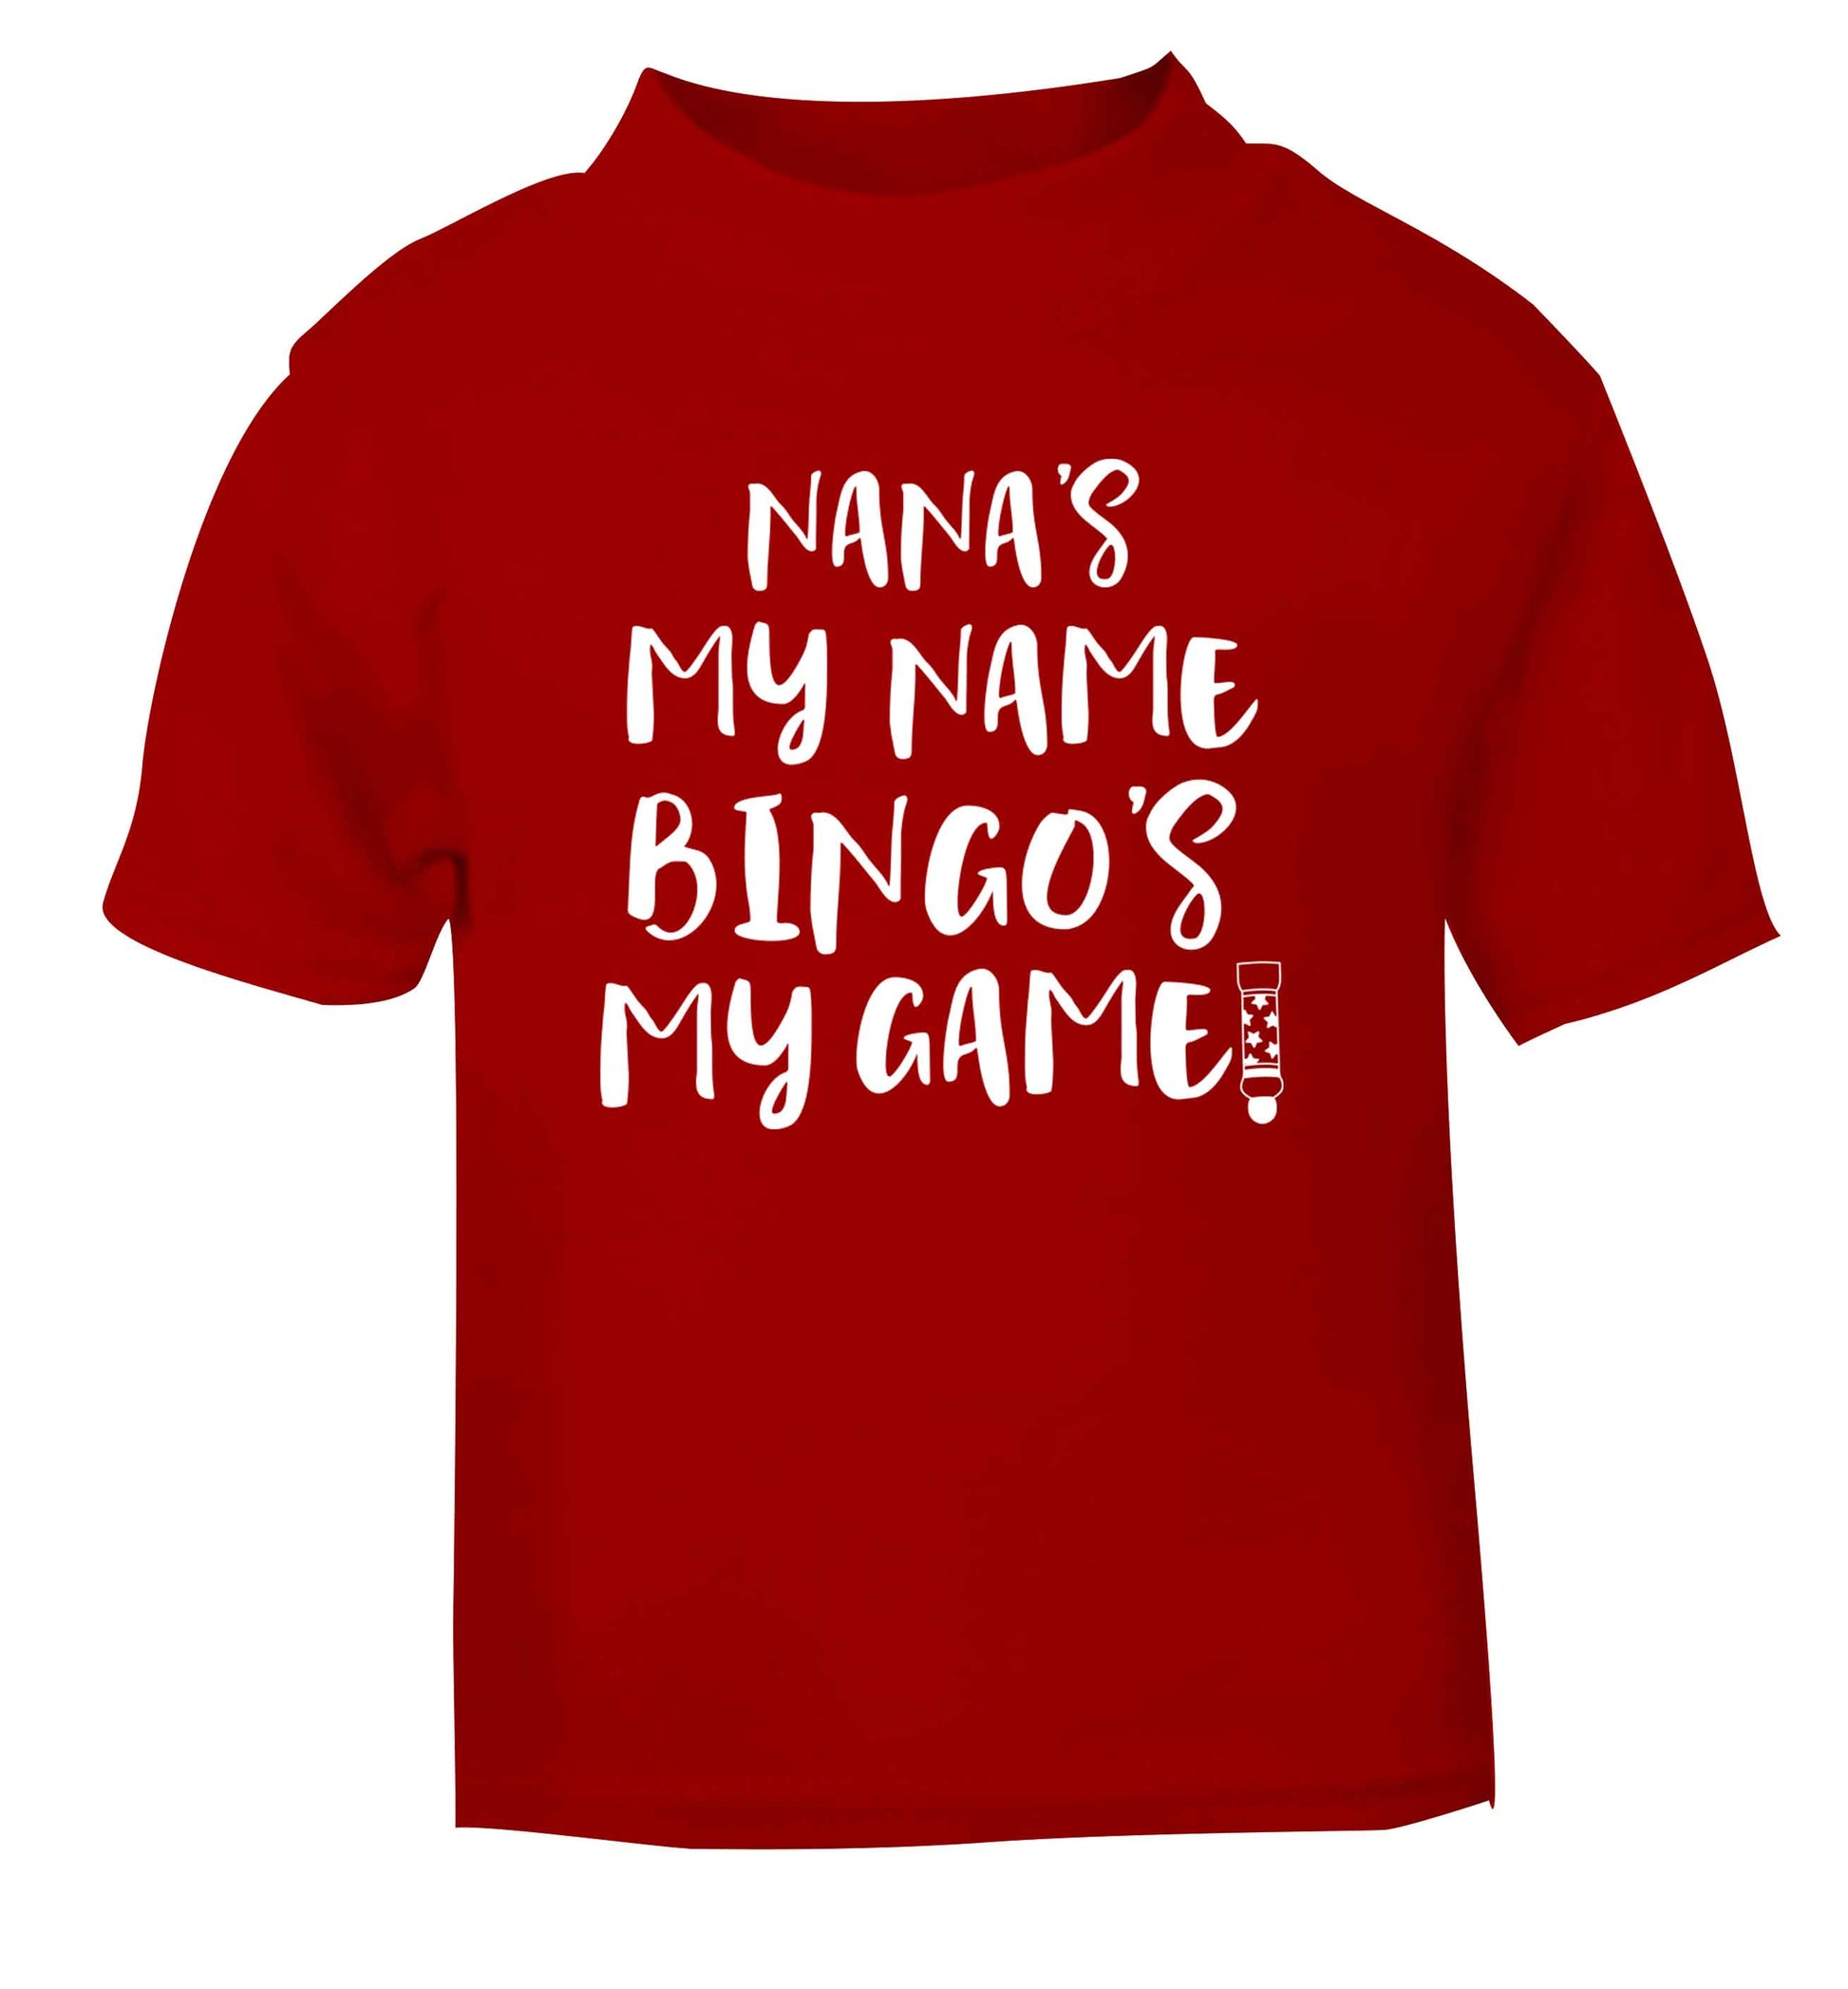 Nana's my name bingo's my game! red Baby Toddler Tshirt 2 Years